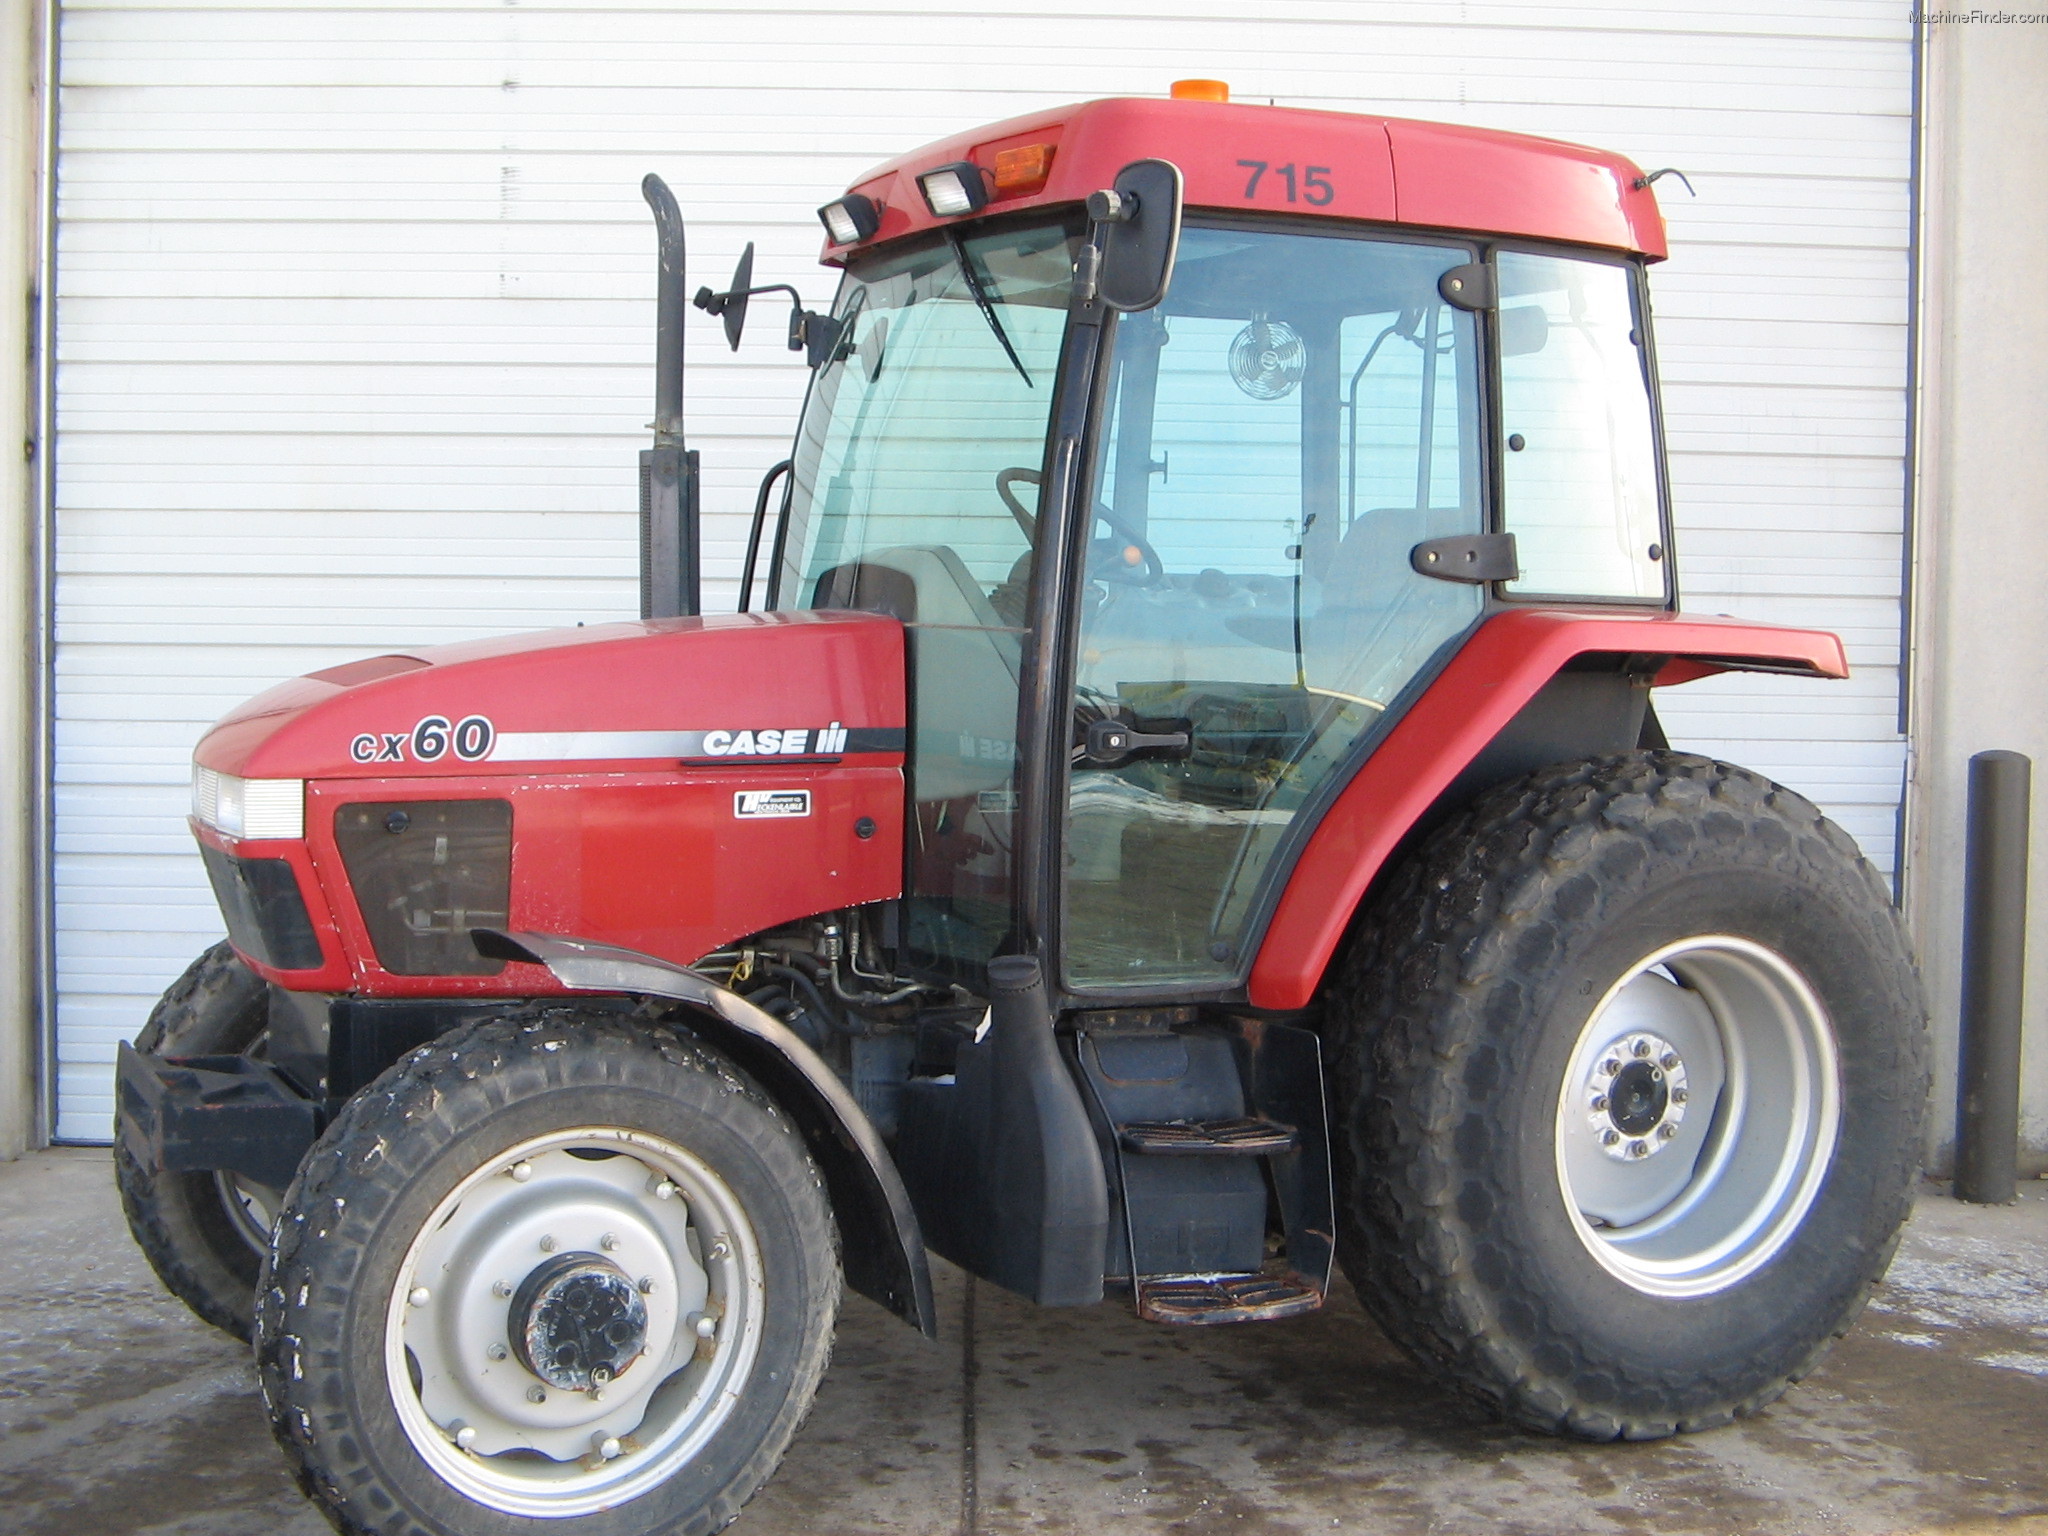 1998 Case IH CX60 Tractors - Utility (40-100hp) - John Deere ...